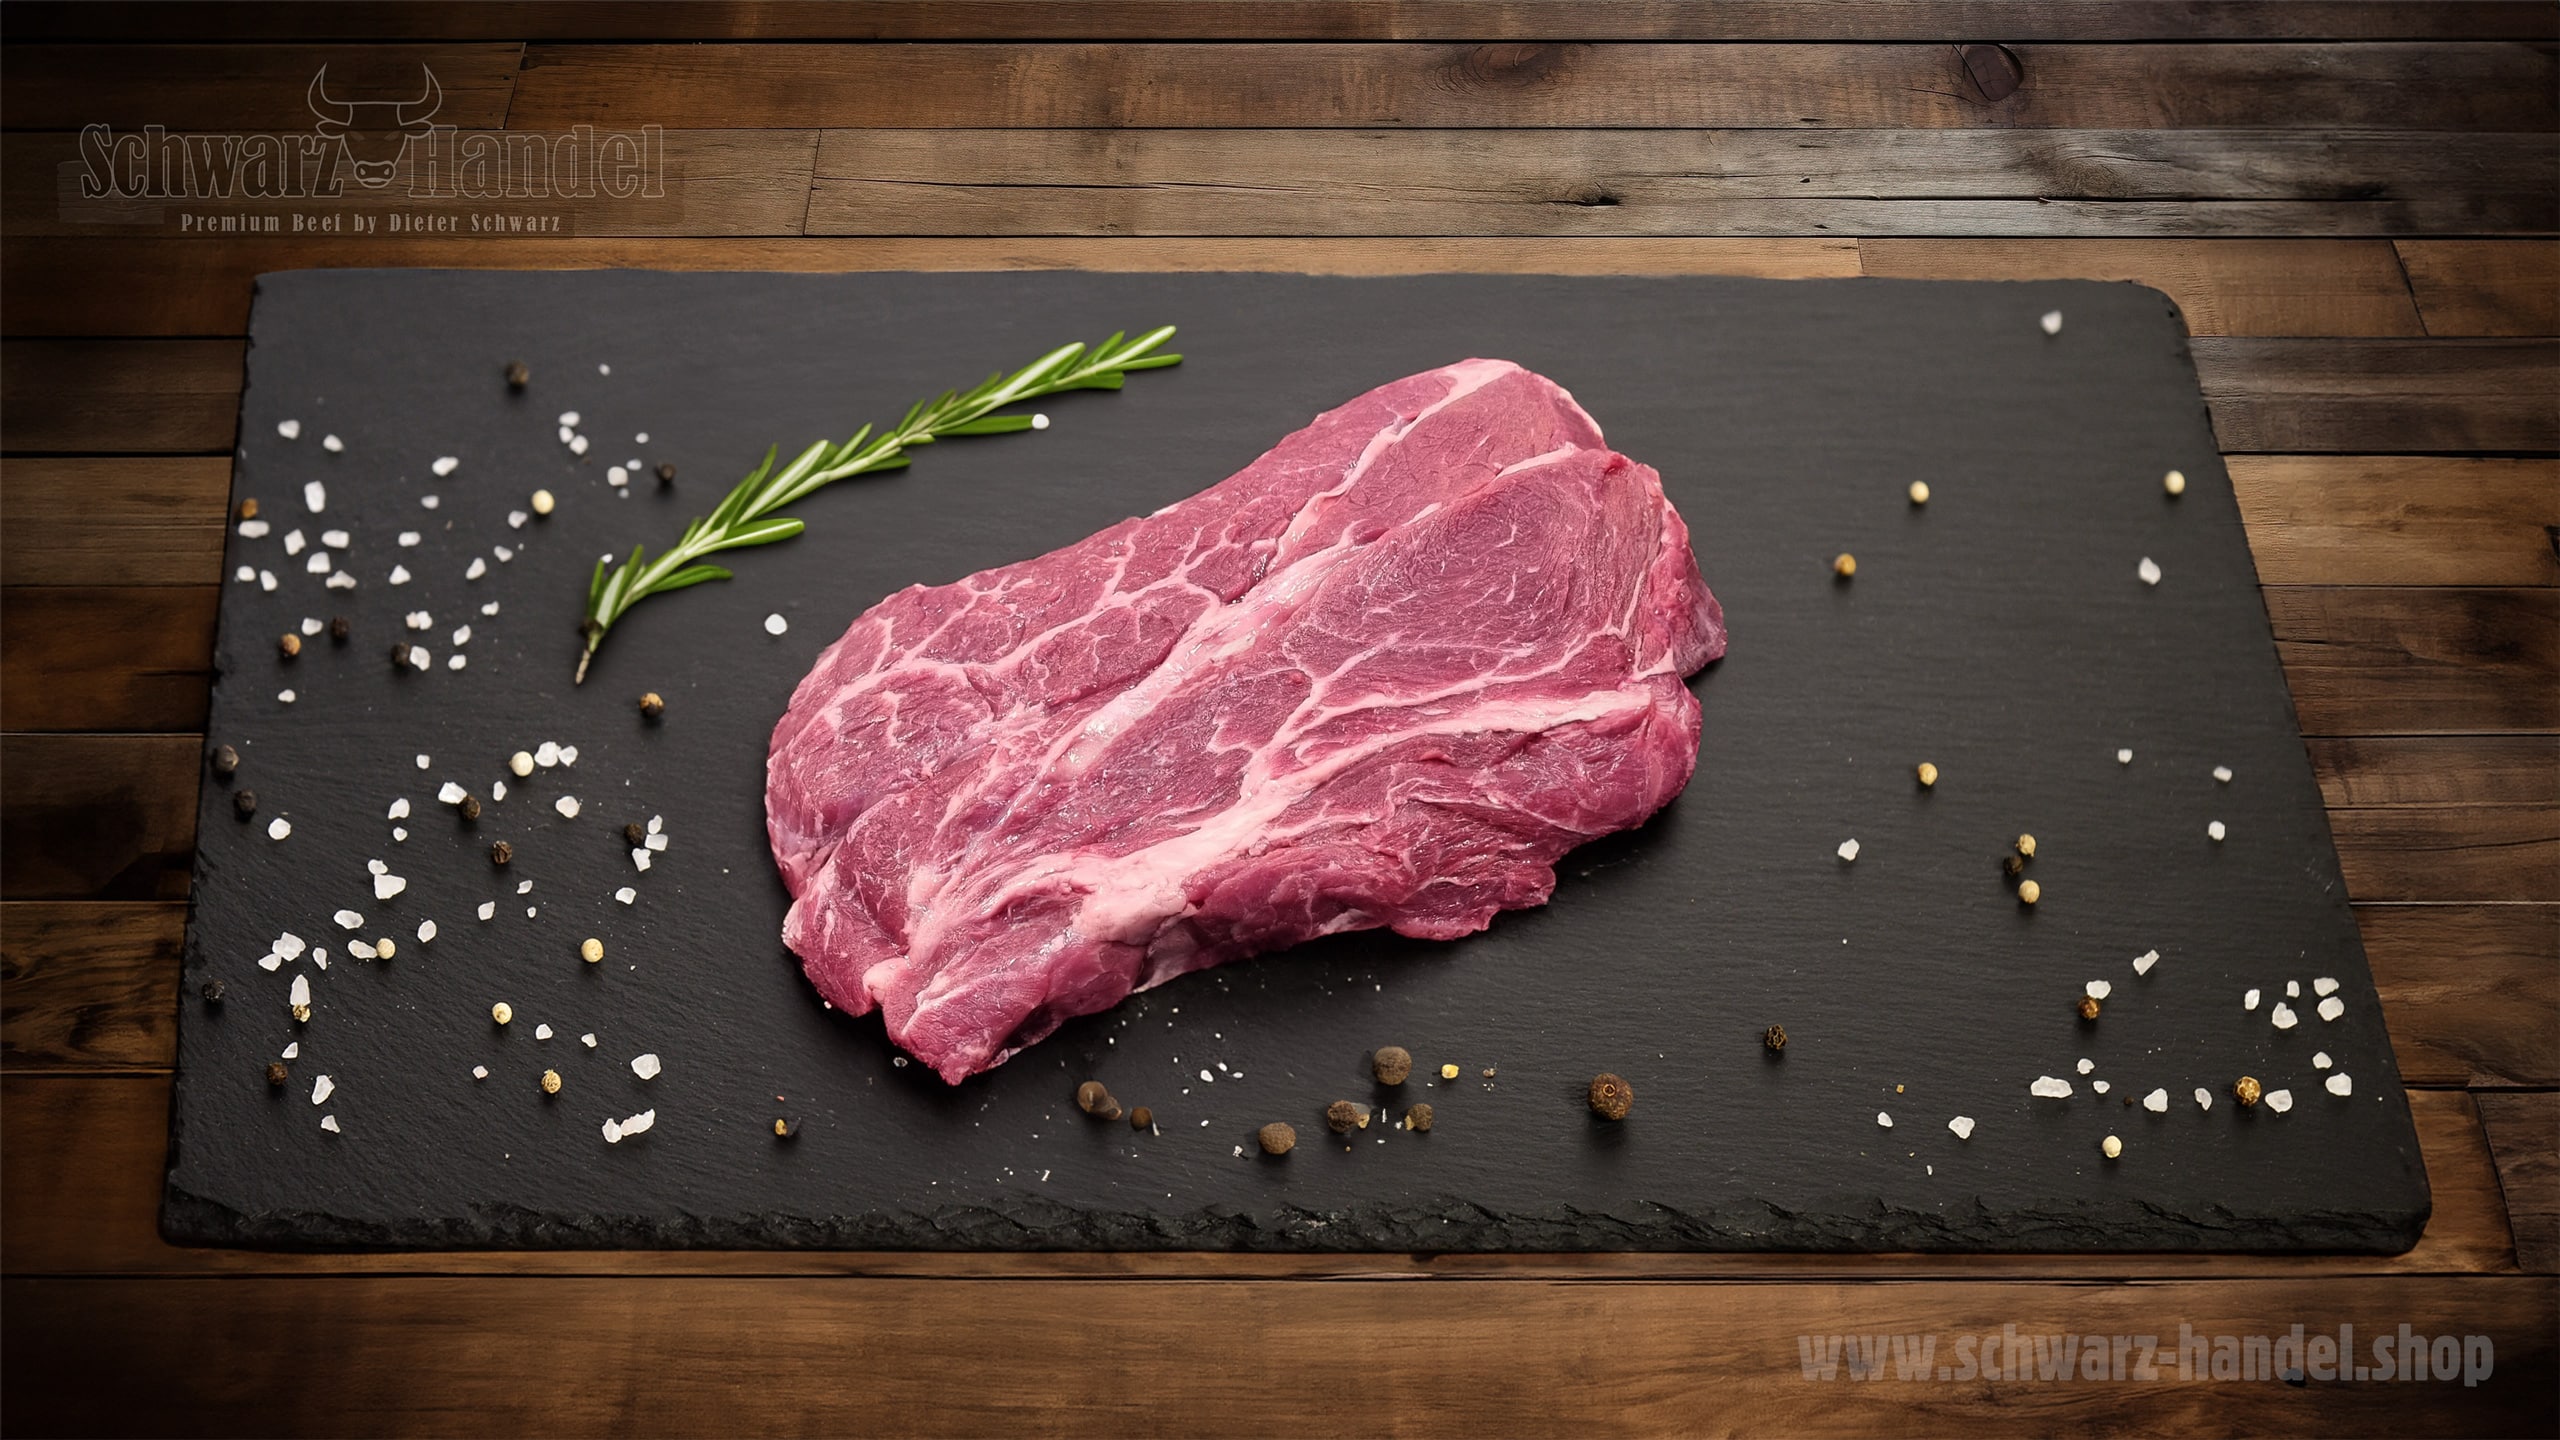 Cowboy-Steak Herz der Hochrippe SchwarzHandel Rindfleisch Rindfleischprodukte Rindfleischprodukt Rindfleischerzeugnisse Rindfleischerzeugnis Beef BeefStore Premiumbeef Premium Beef